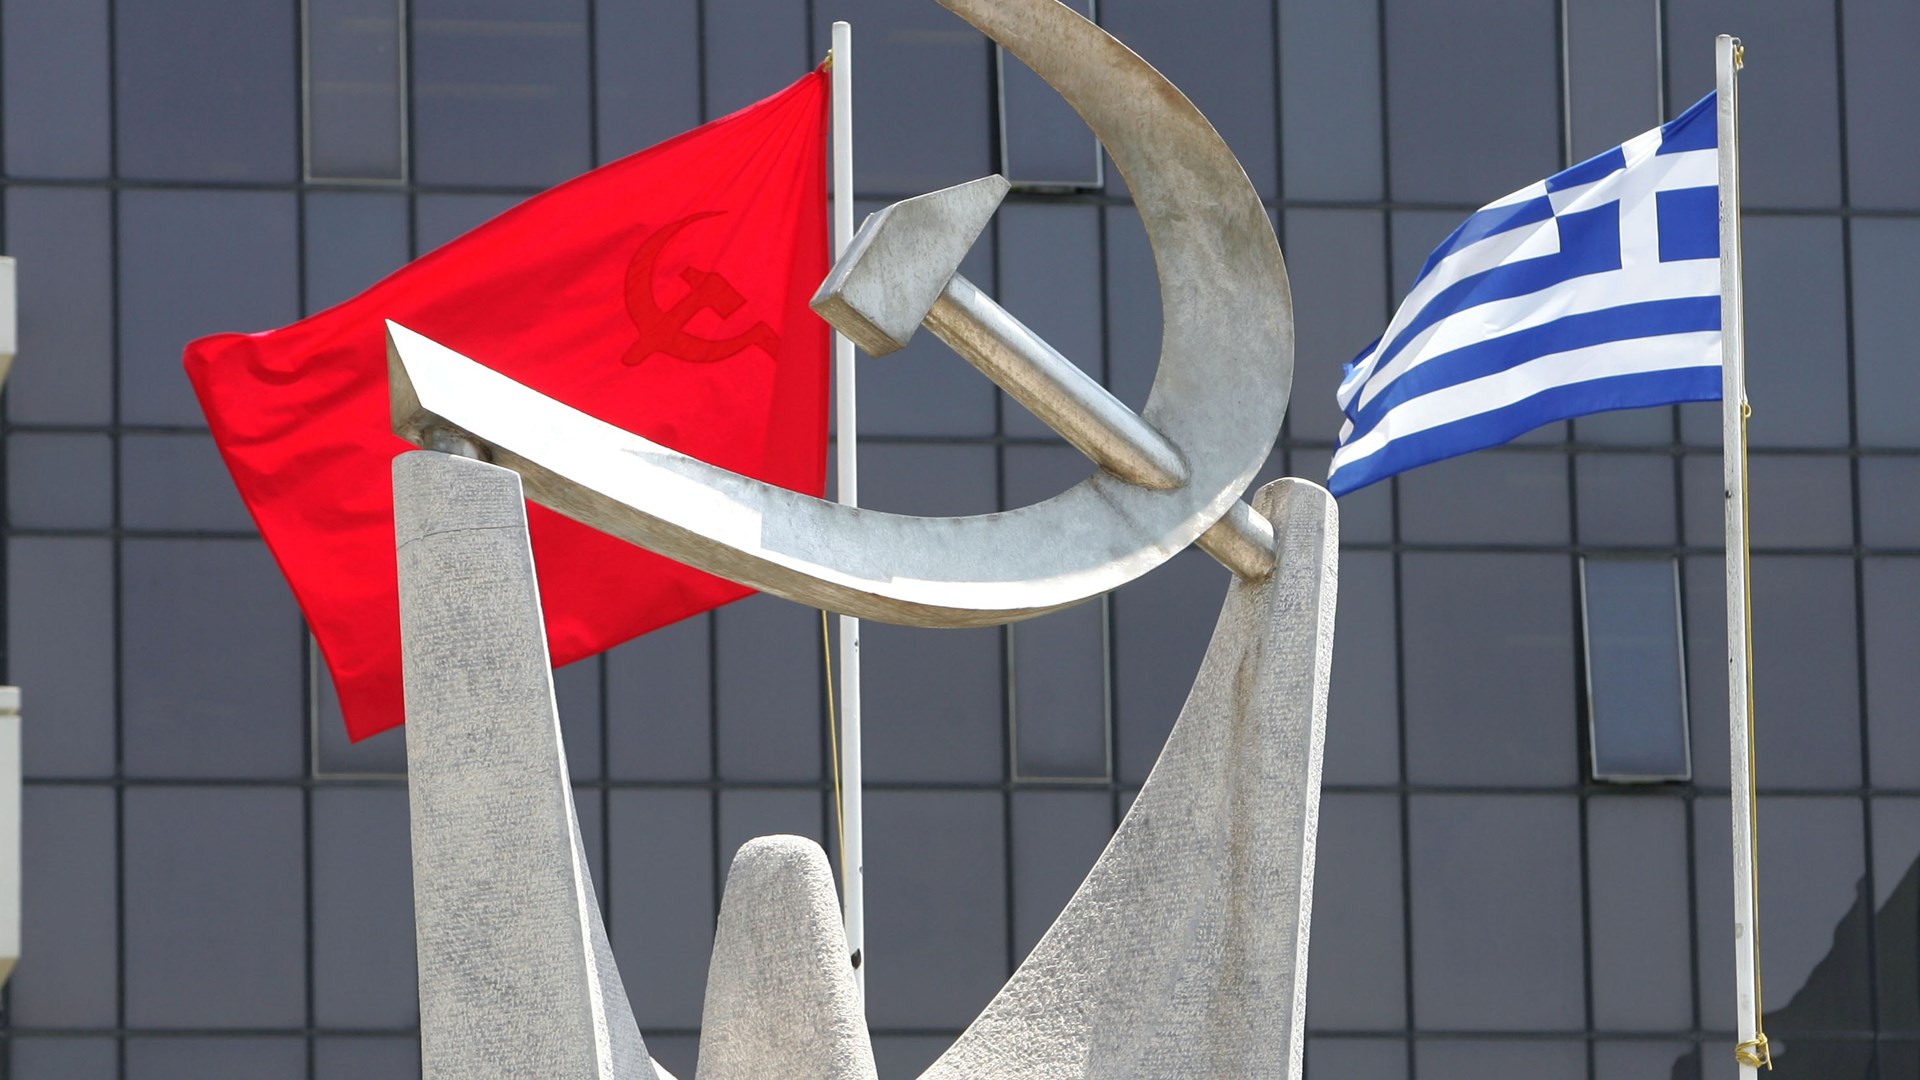 ΚΚΕ: Η “νέα αριστερά” είναι η αμαρτωλή ευρωπαϊκή σοσιαλδημοκρατία που ο Τσίπρας προσπαθεί να ξεπλύνει